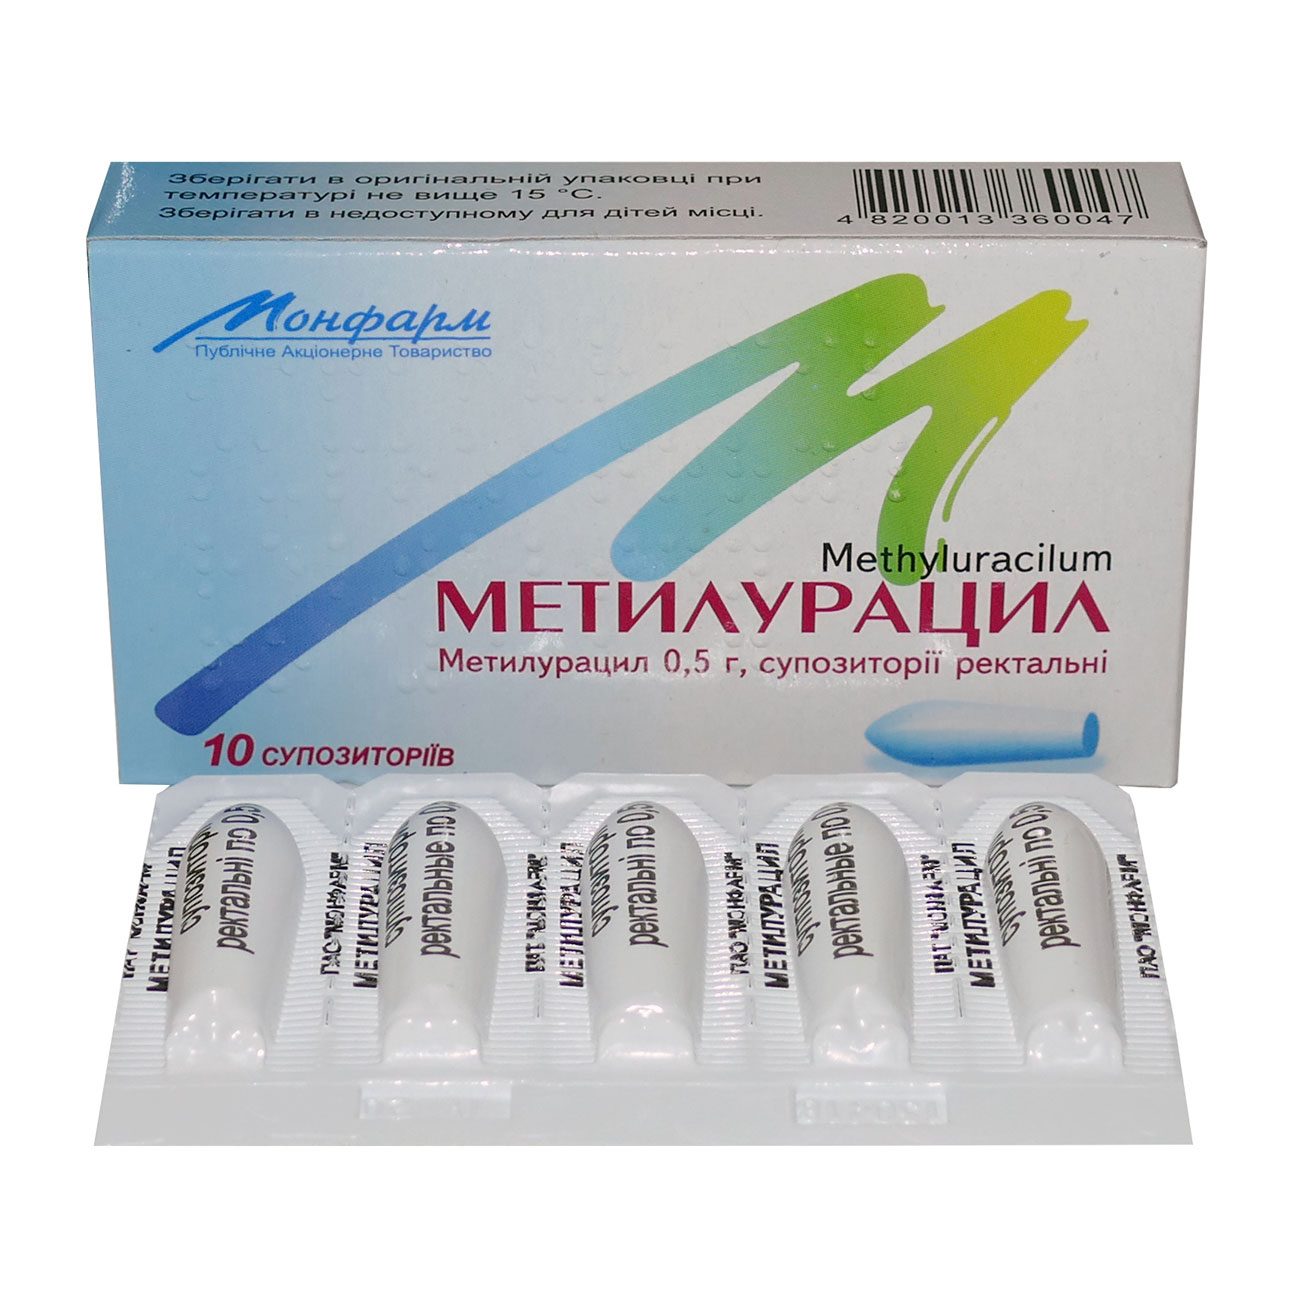 Метилурацил - мазь, свечи и таблетки: инструкция по применению и цена